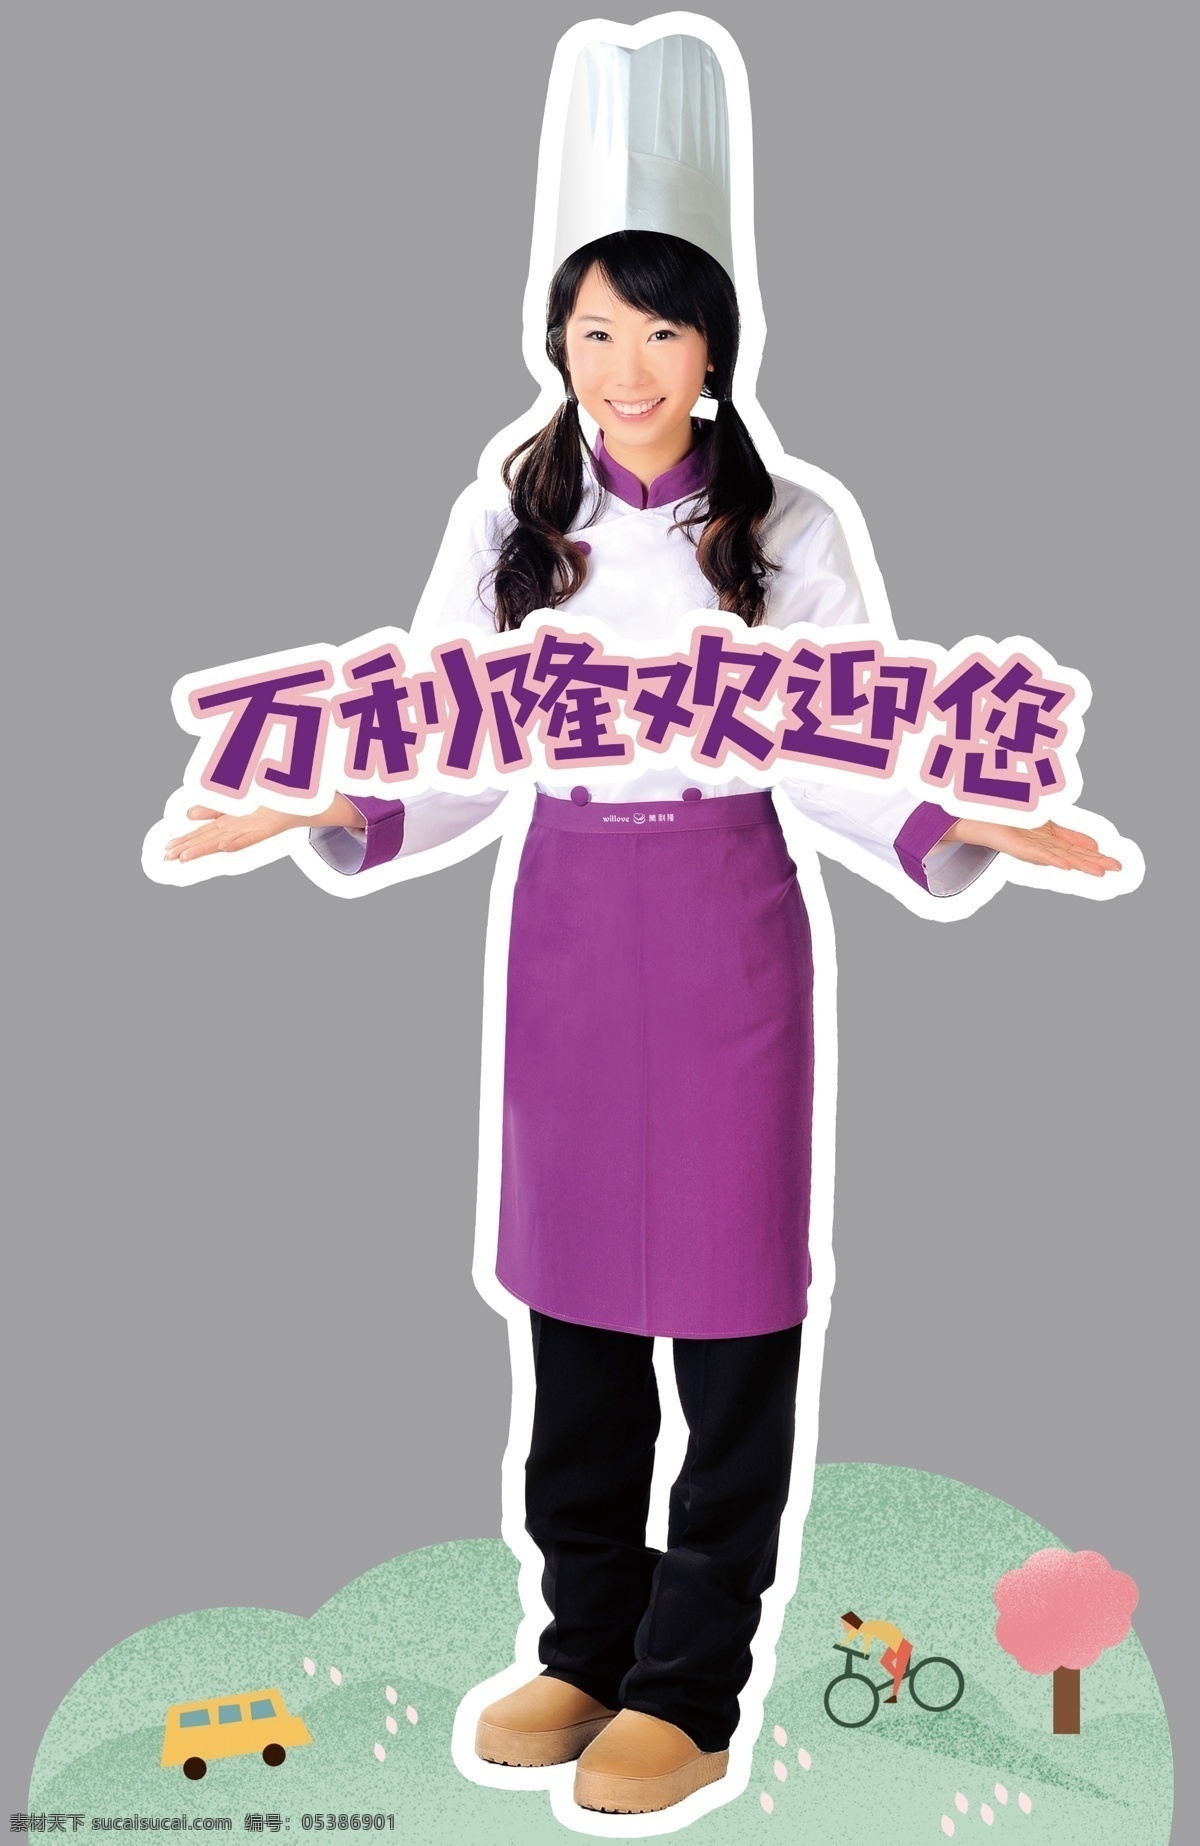 万利 隆 人形 立牌 万利隆 人形立牌 欢迎您 欢迎光临 女厨师 服务员 蛋糕店广告